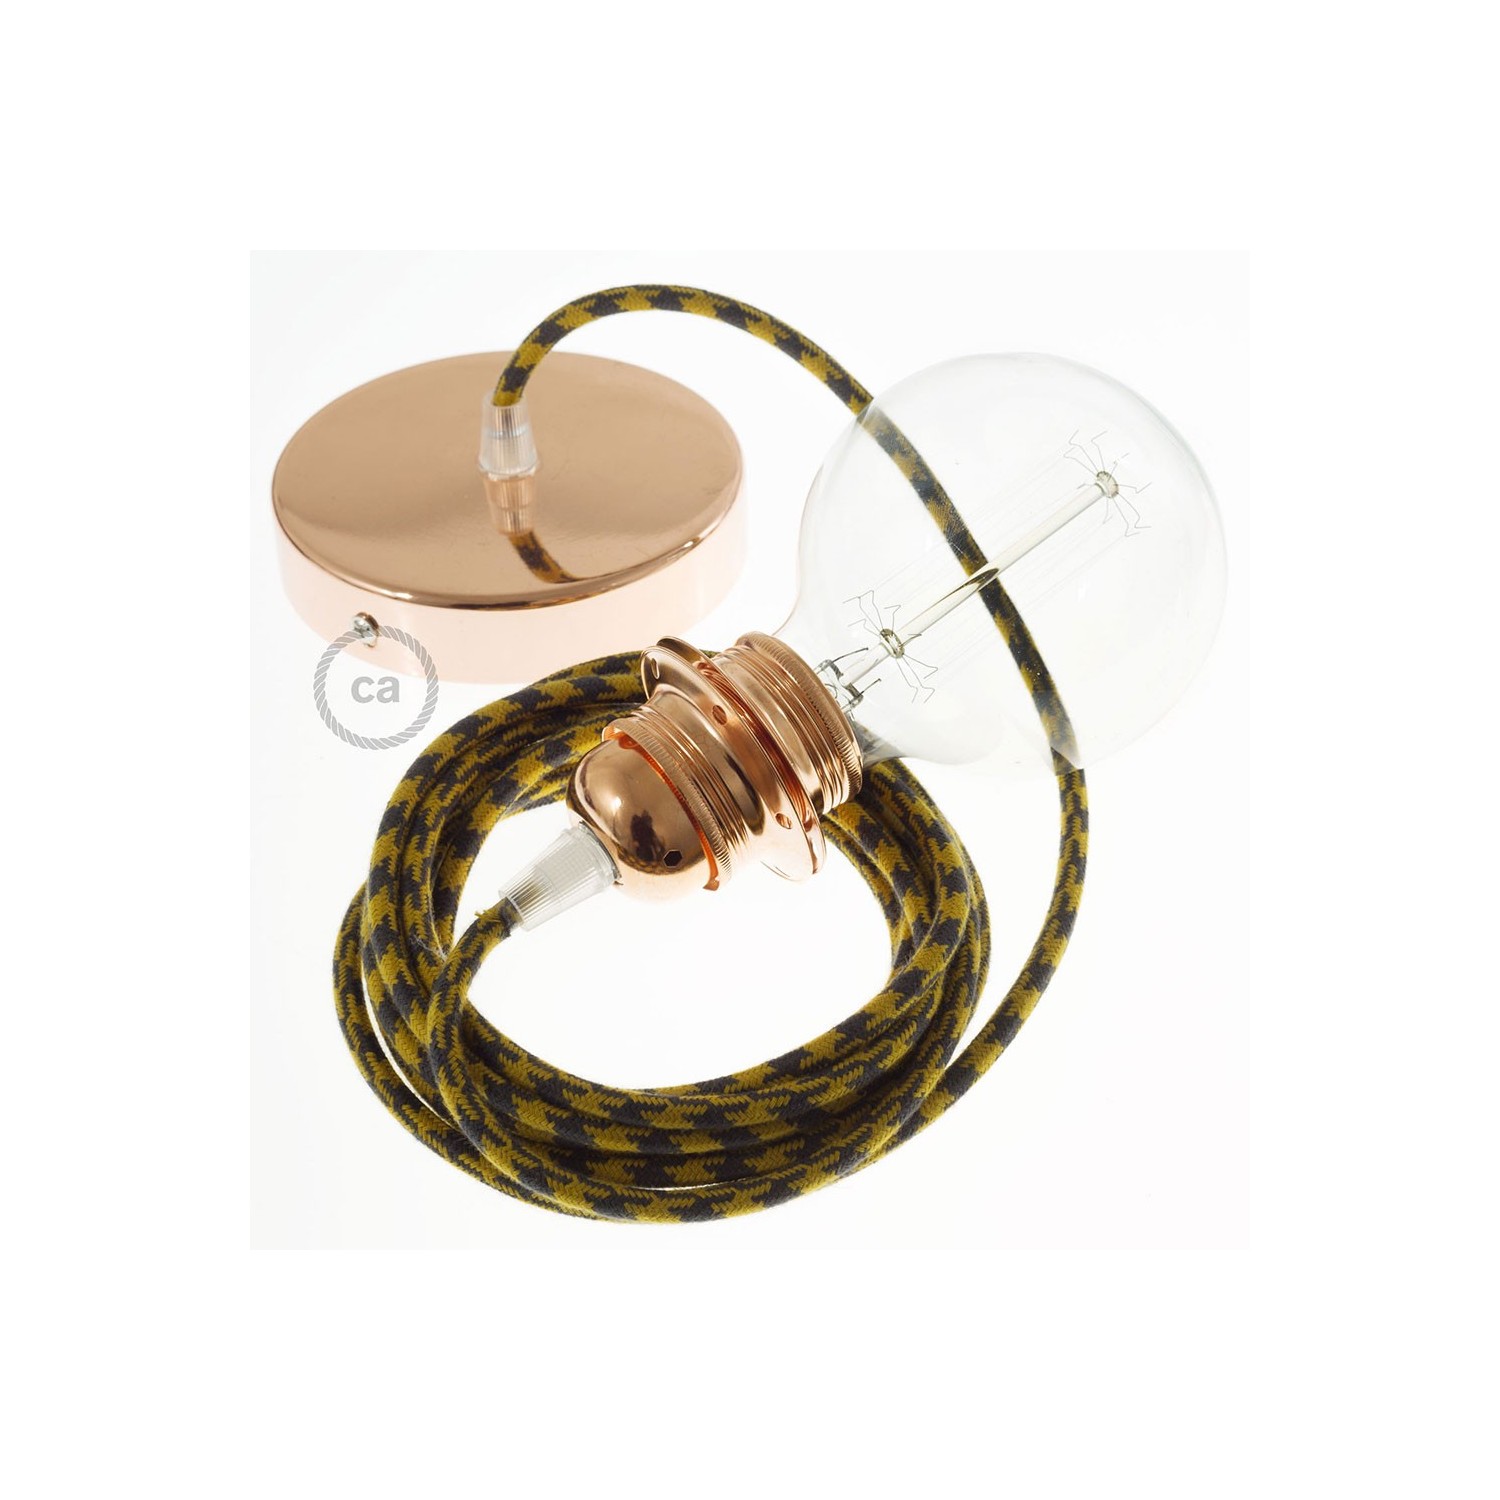 Lampe suspension pour Abat-jour câble textile Coton Bicolore Miel Doré and Anthracite RP27